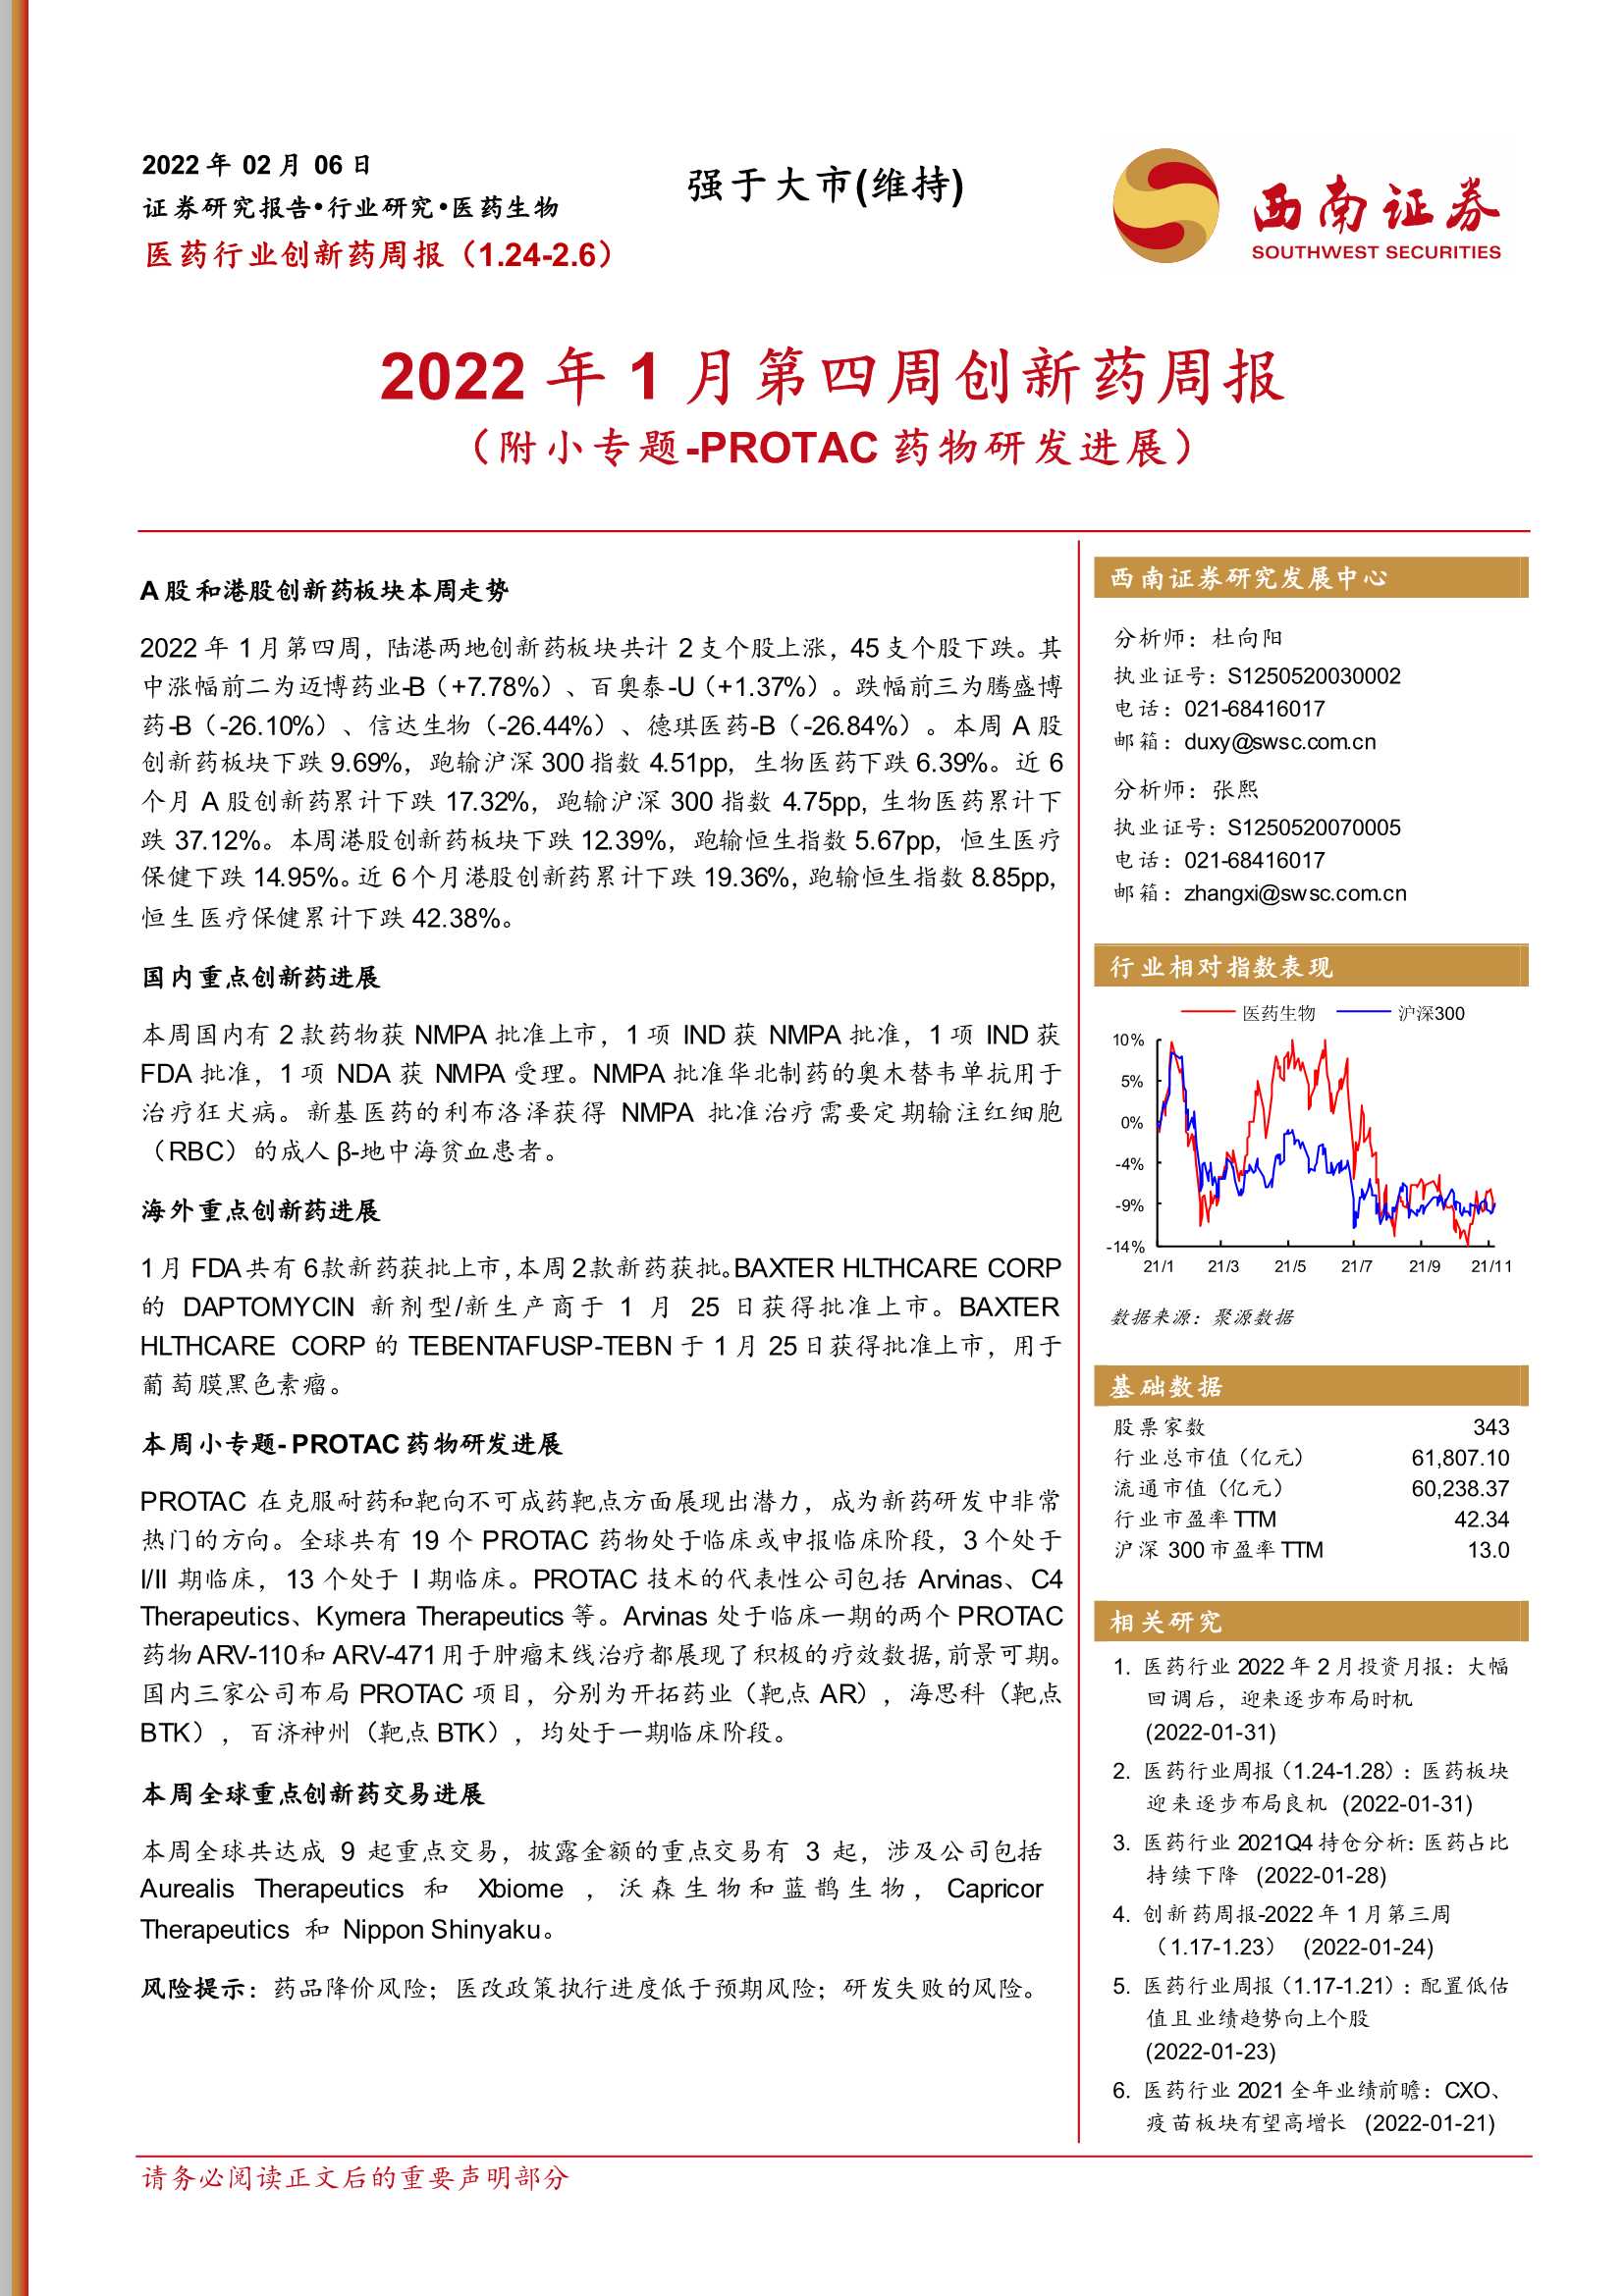 西南证券-医药行业创新药周报：2022年1月第四周创新药周报-20220206-25页